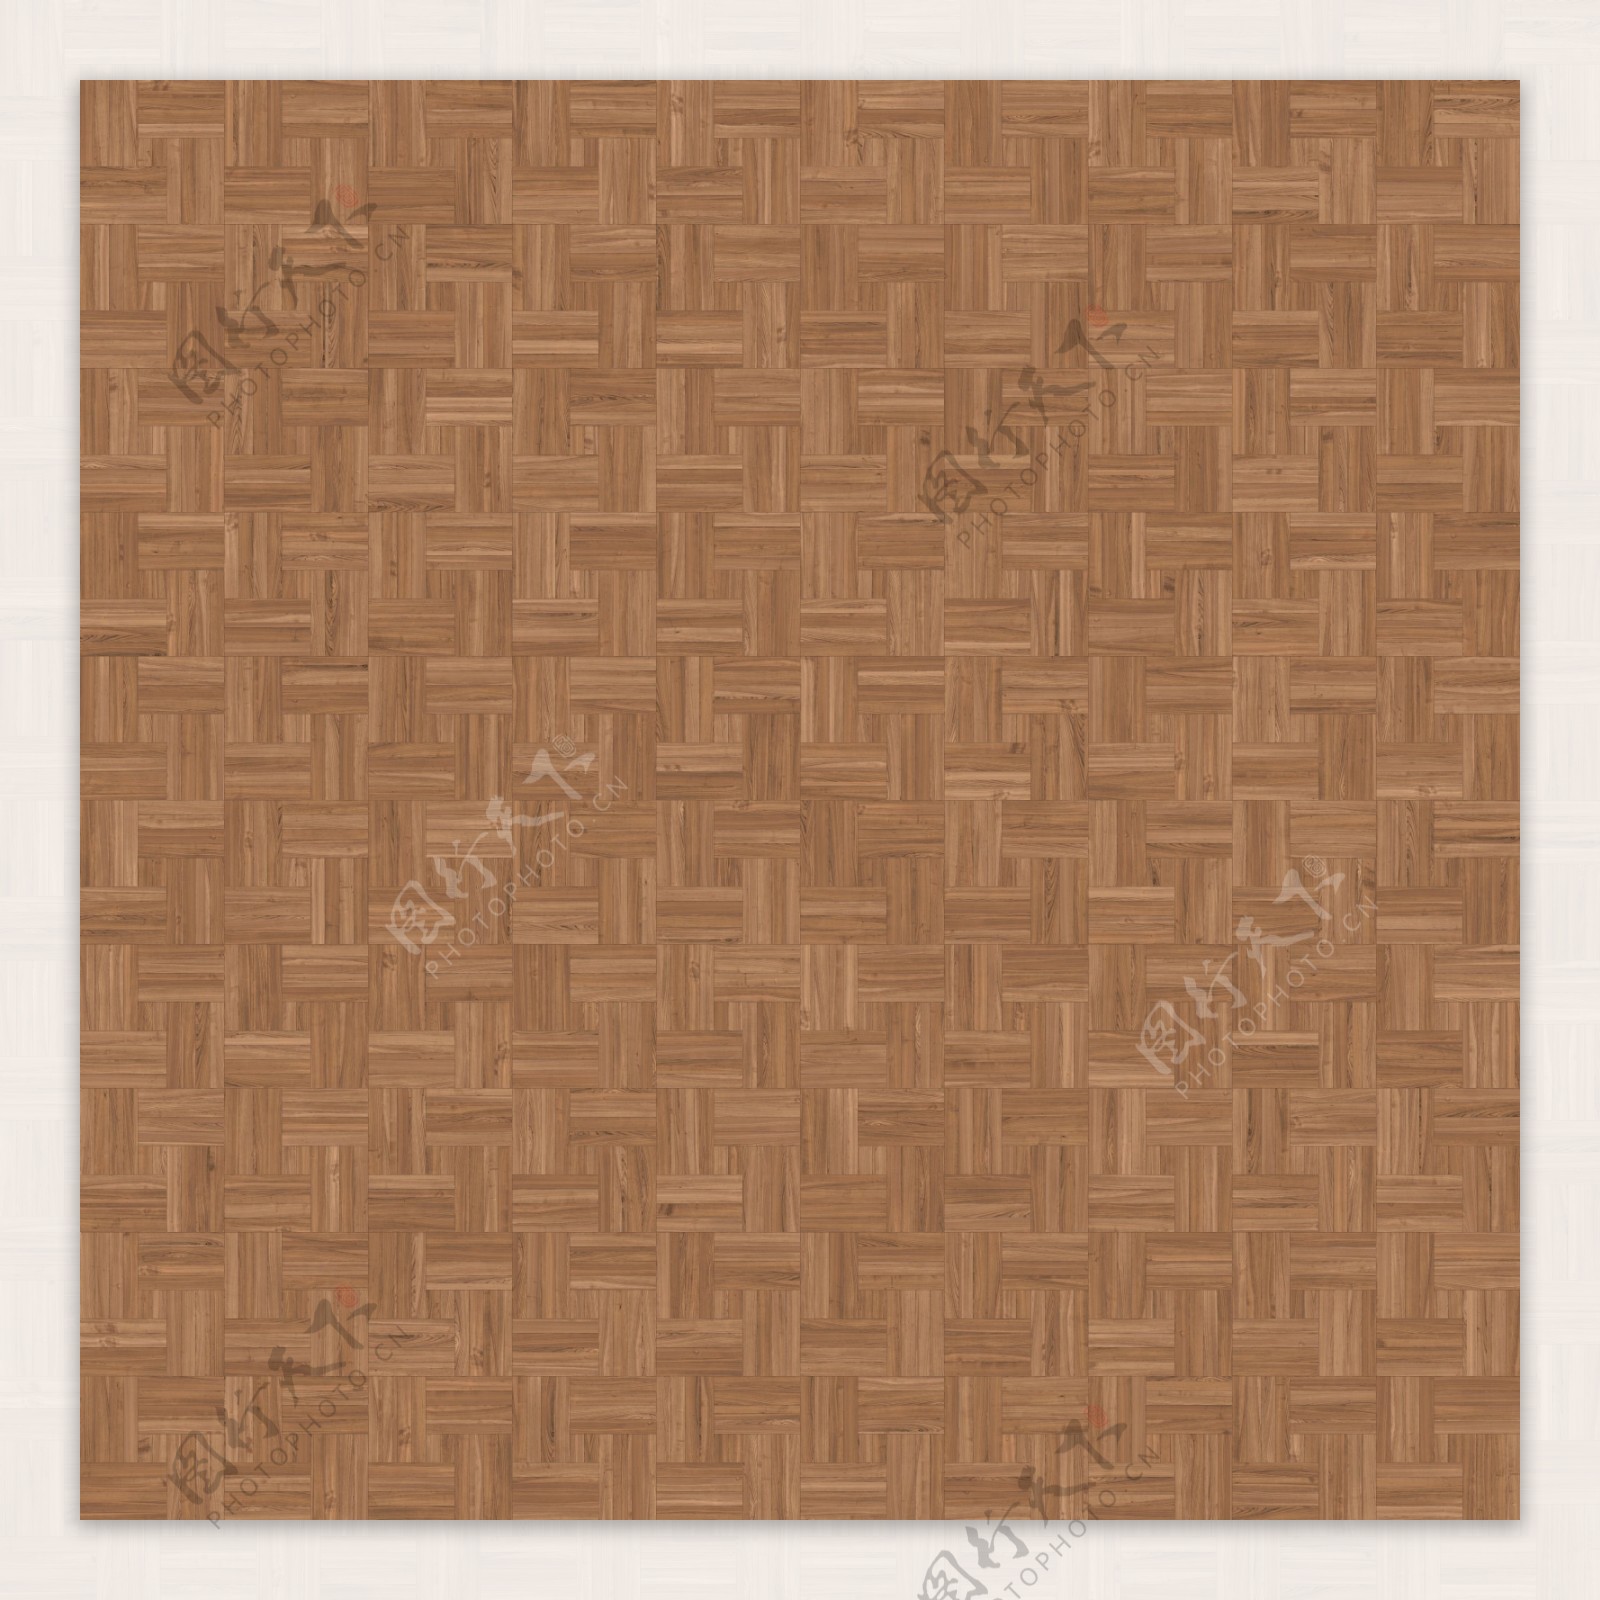 高清棕色木纹图案背景jpg素